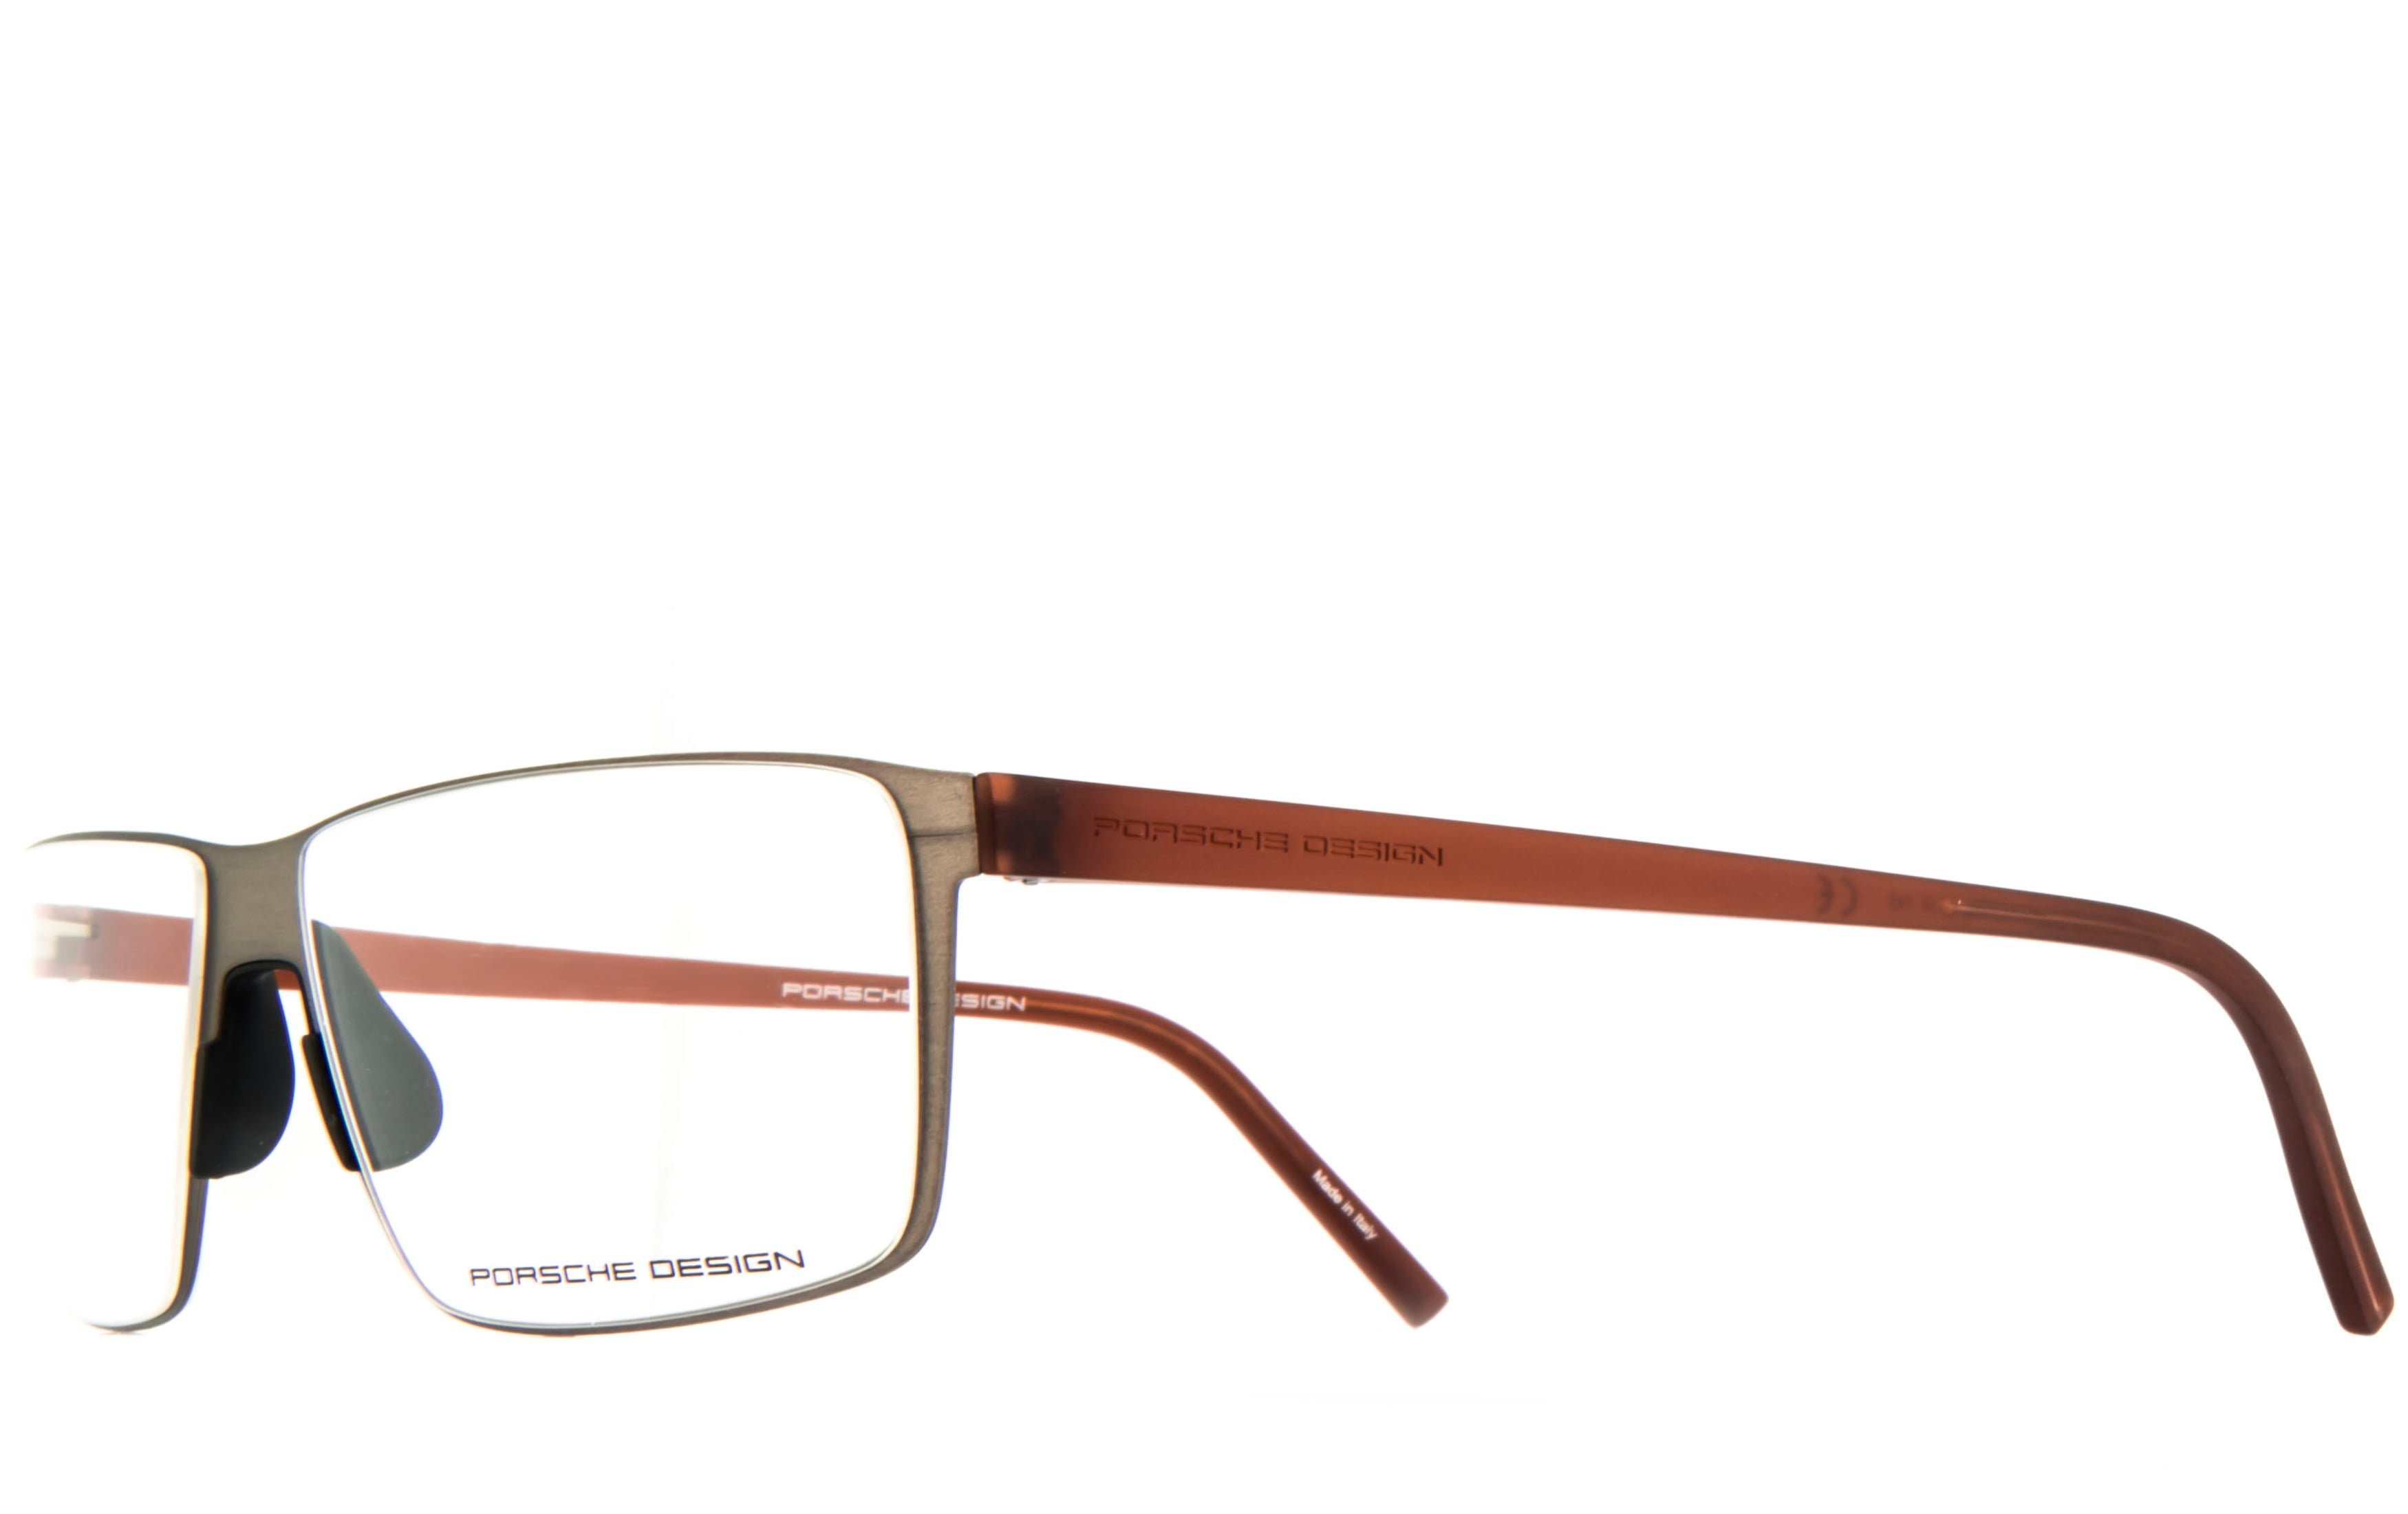 Sehstärke Brille, Brille Bildschirmbrille, Blaulichtfilter ohne Brille, Gamingbrille, Bürobrille, Design Blaulicht PORSCHE